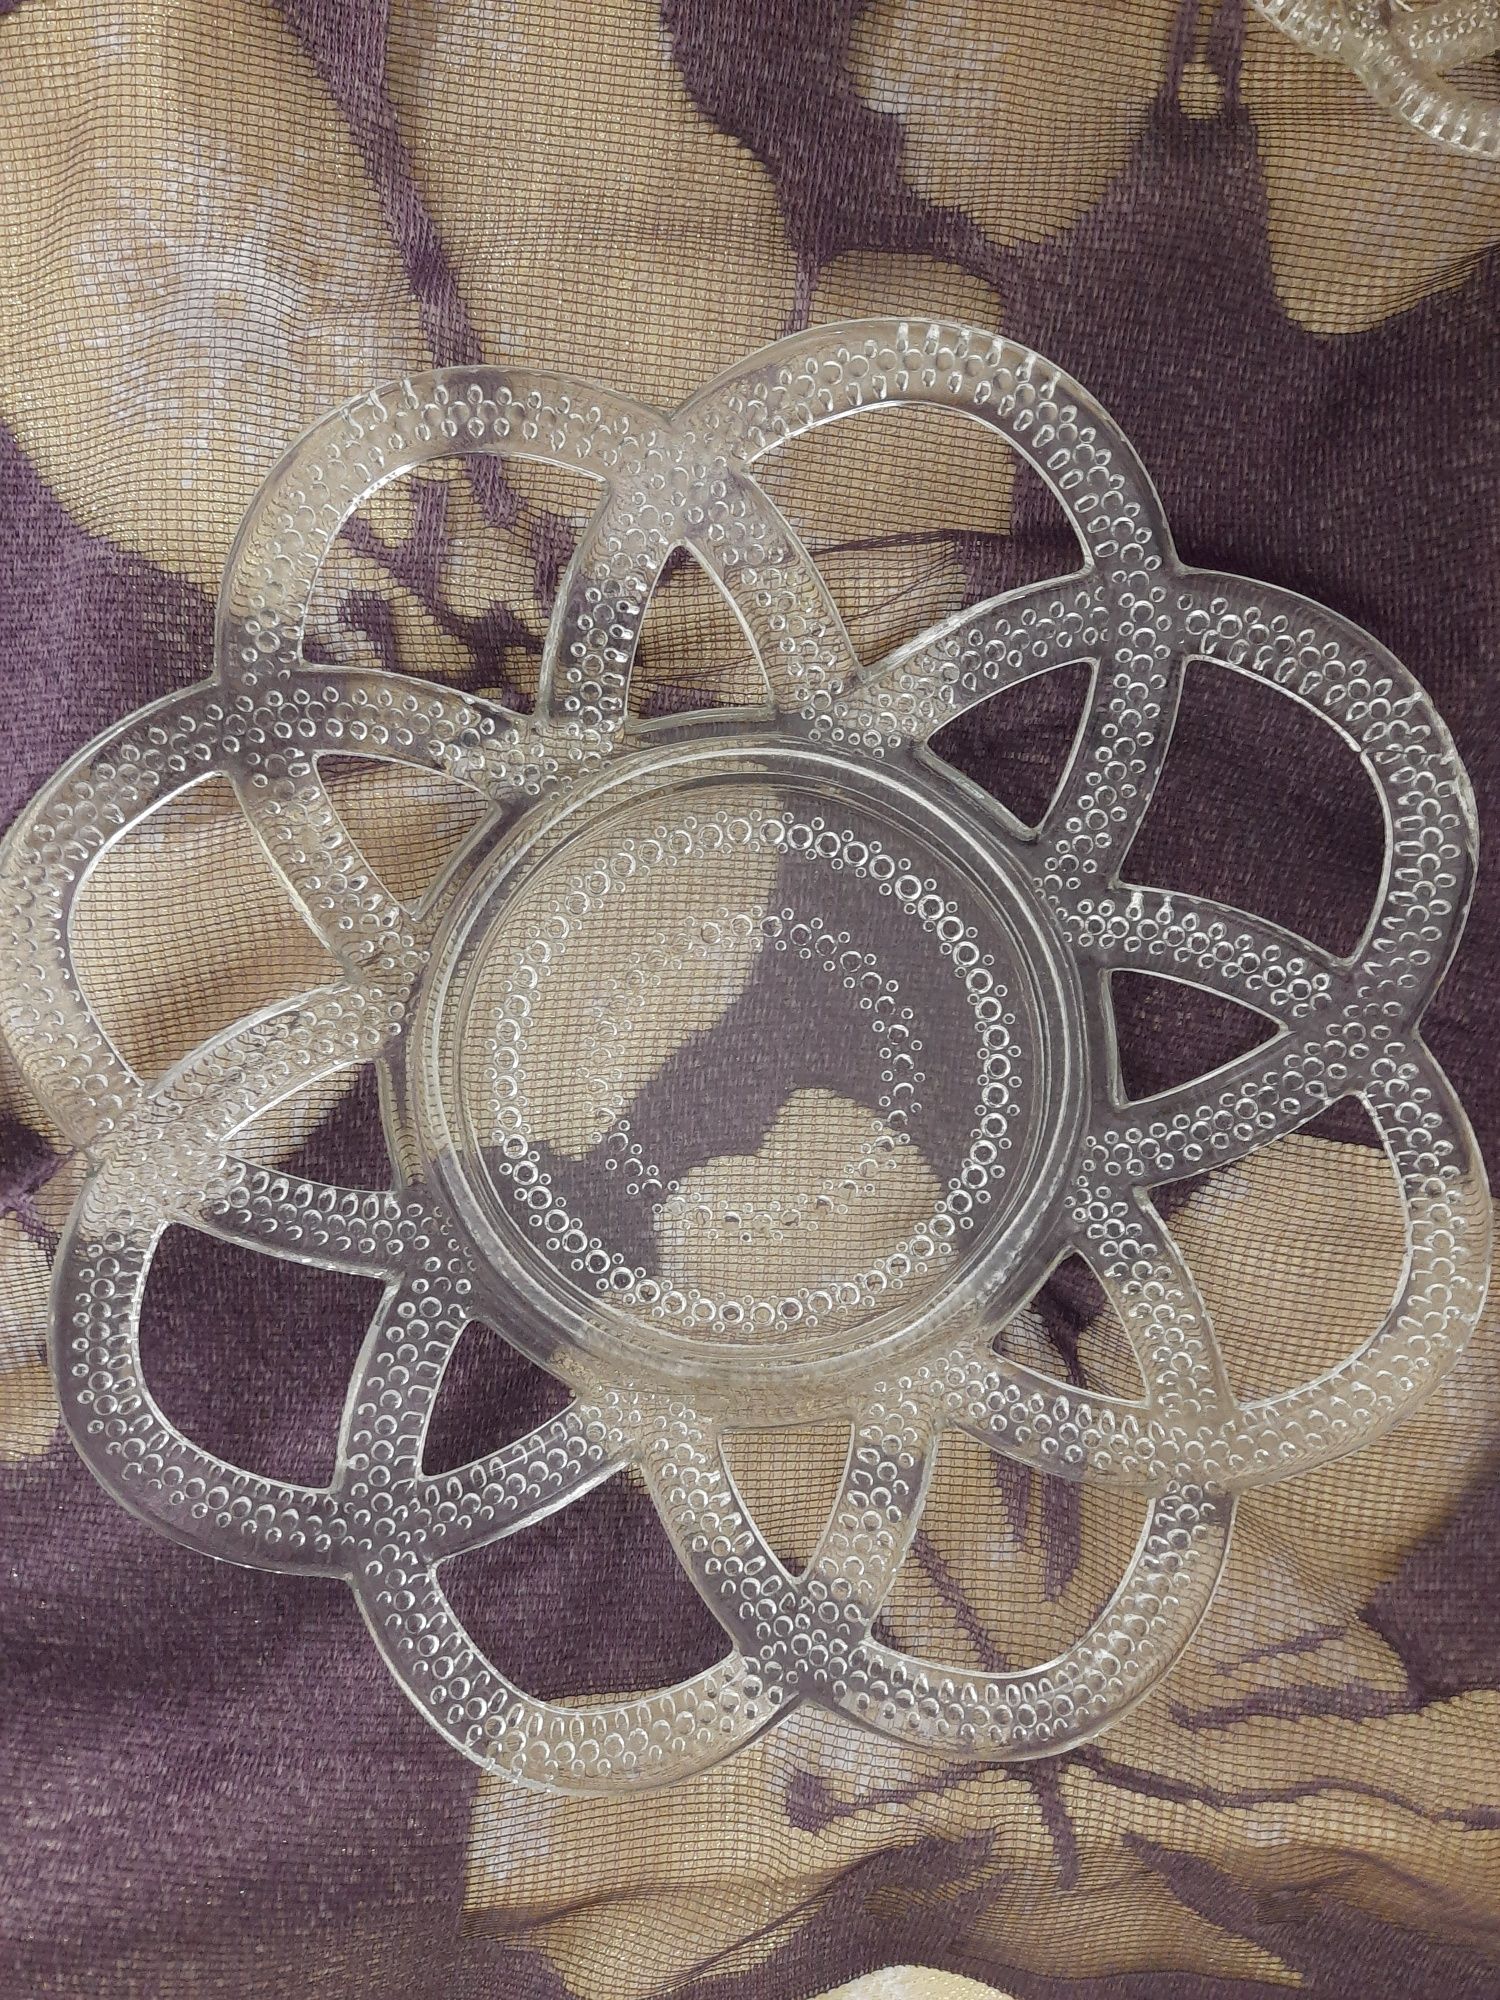 Komplet deserowy szkło  patera talerzyki lata 60